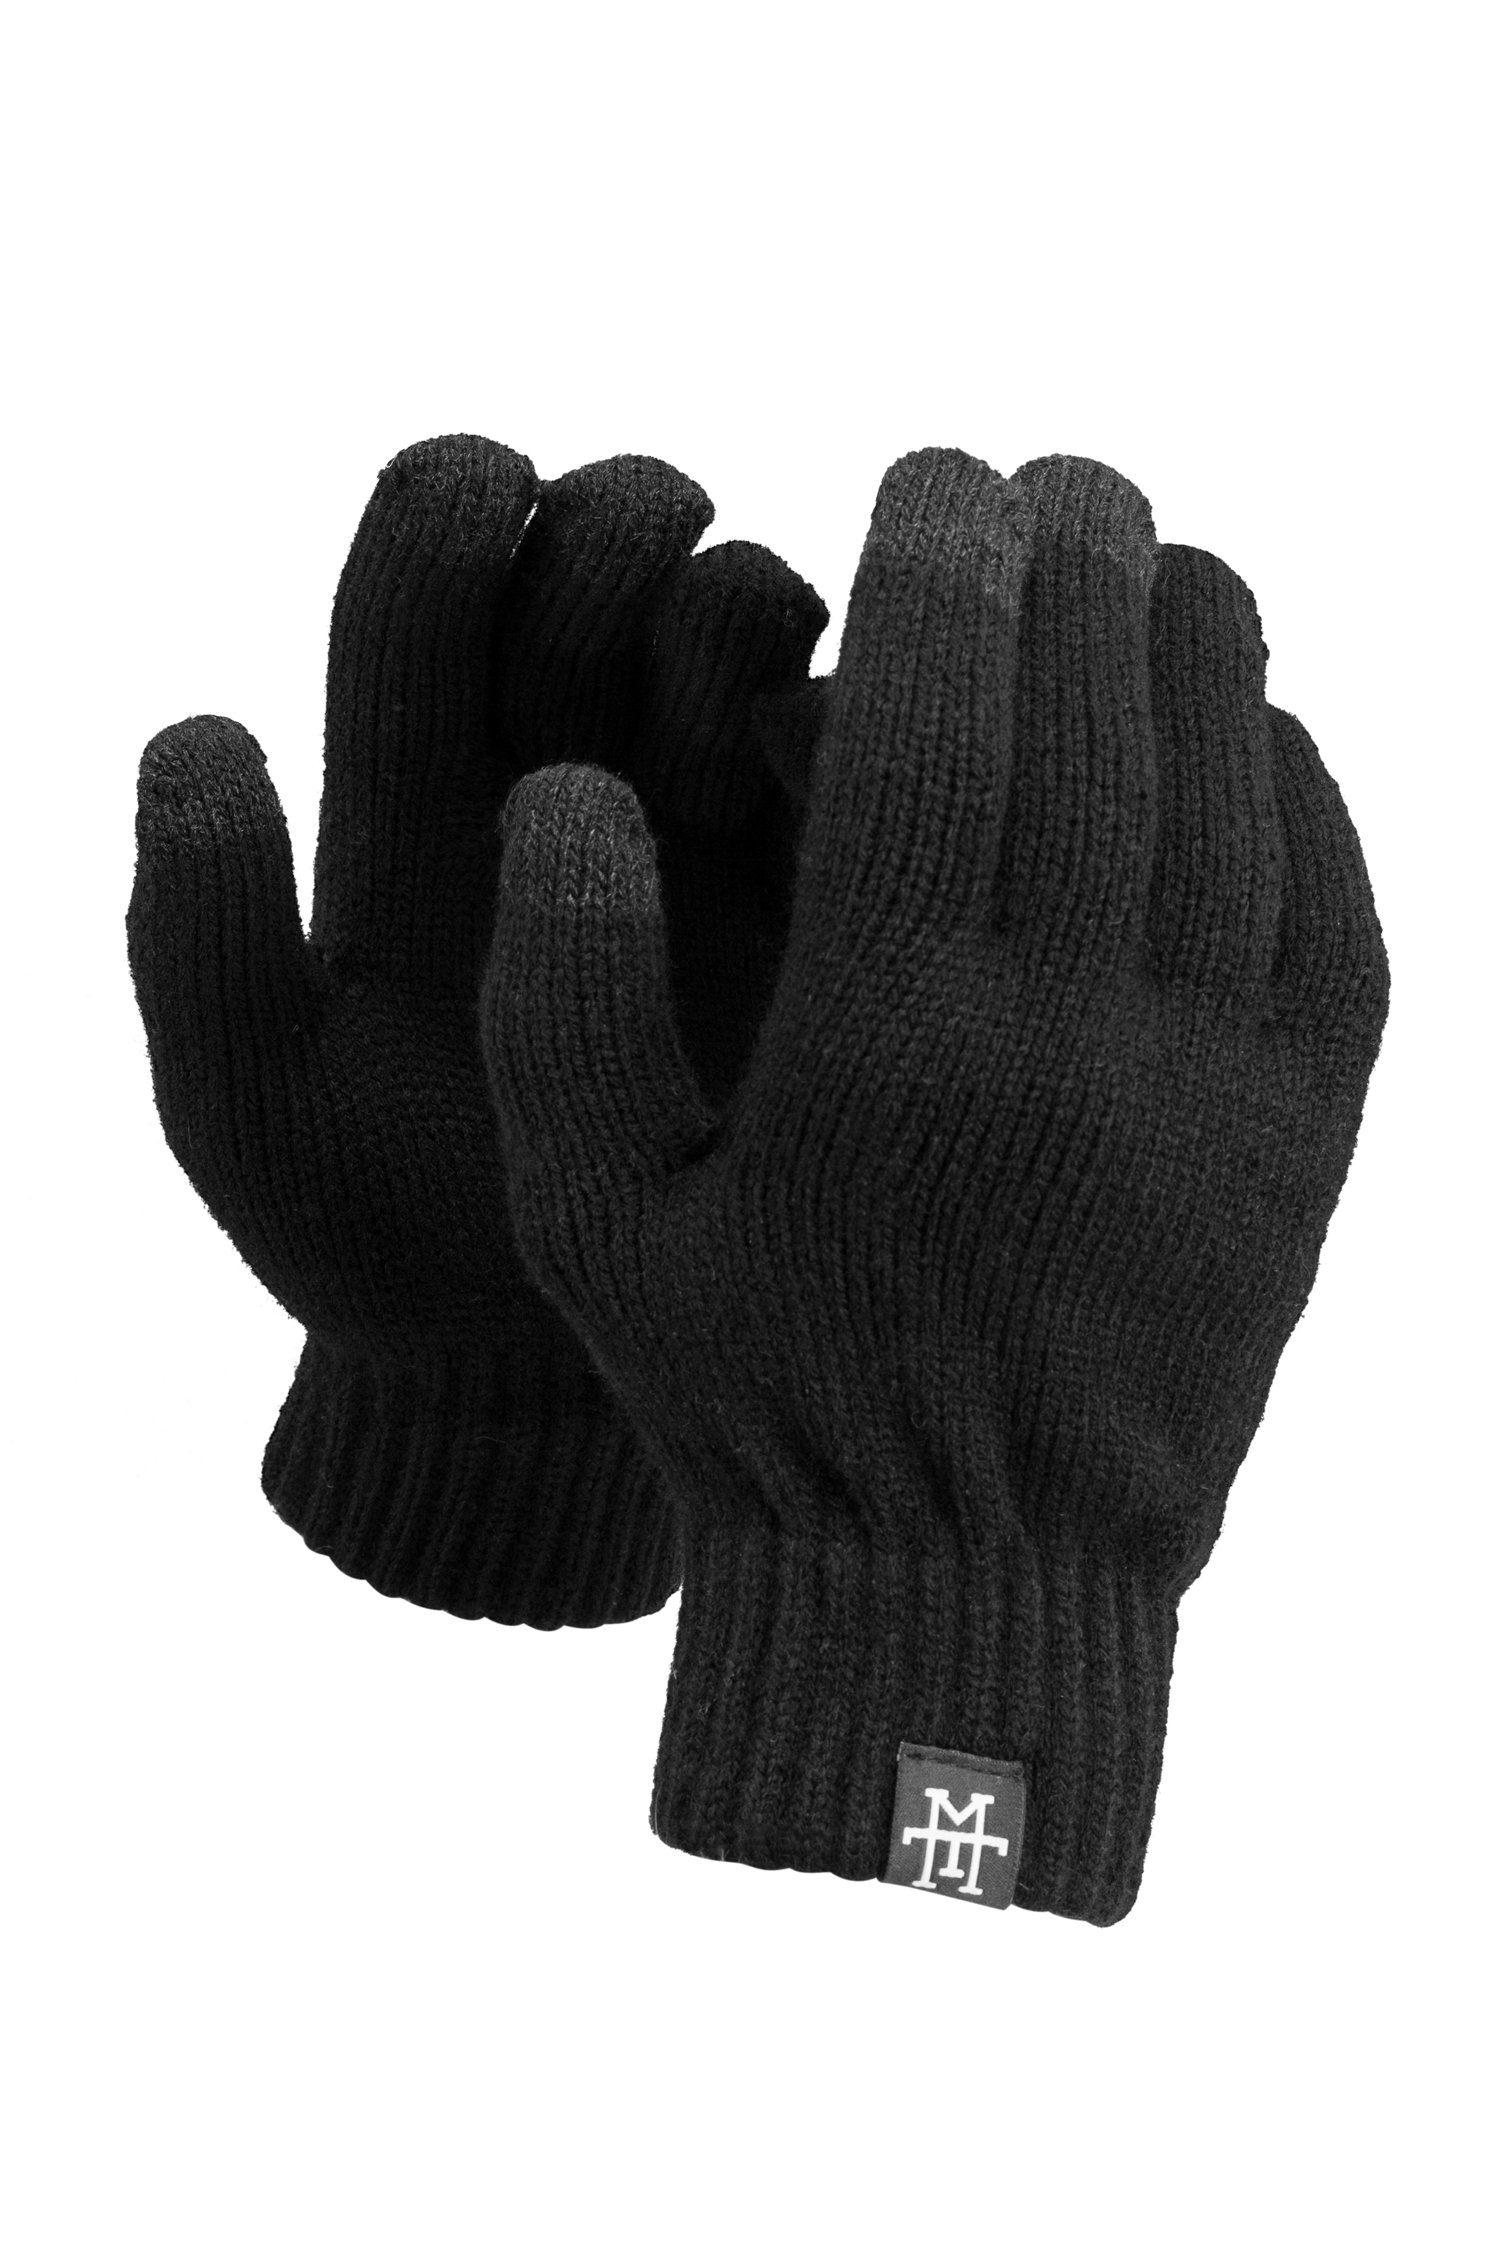 Manufaktur13 Handschuhe Smart Baumwollhandschuhe Thinsulate Gloves Asphalt mit Smartphone Futter -